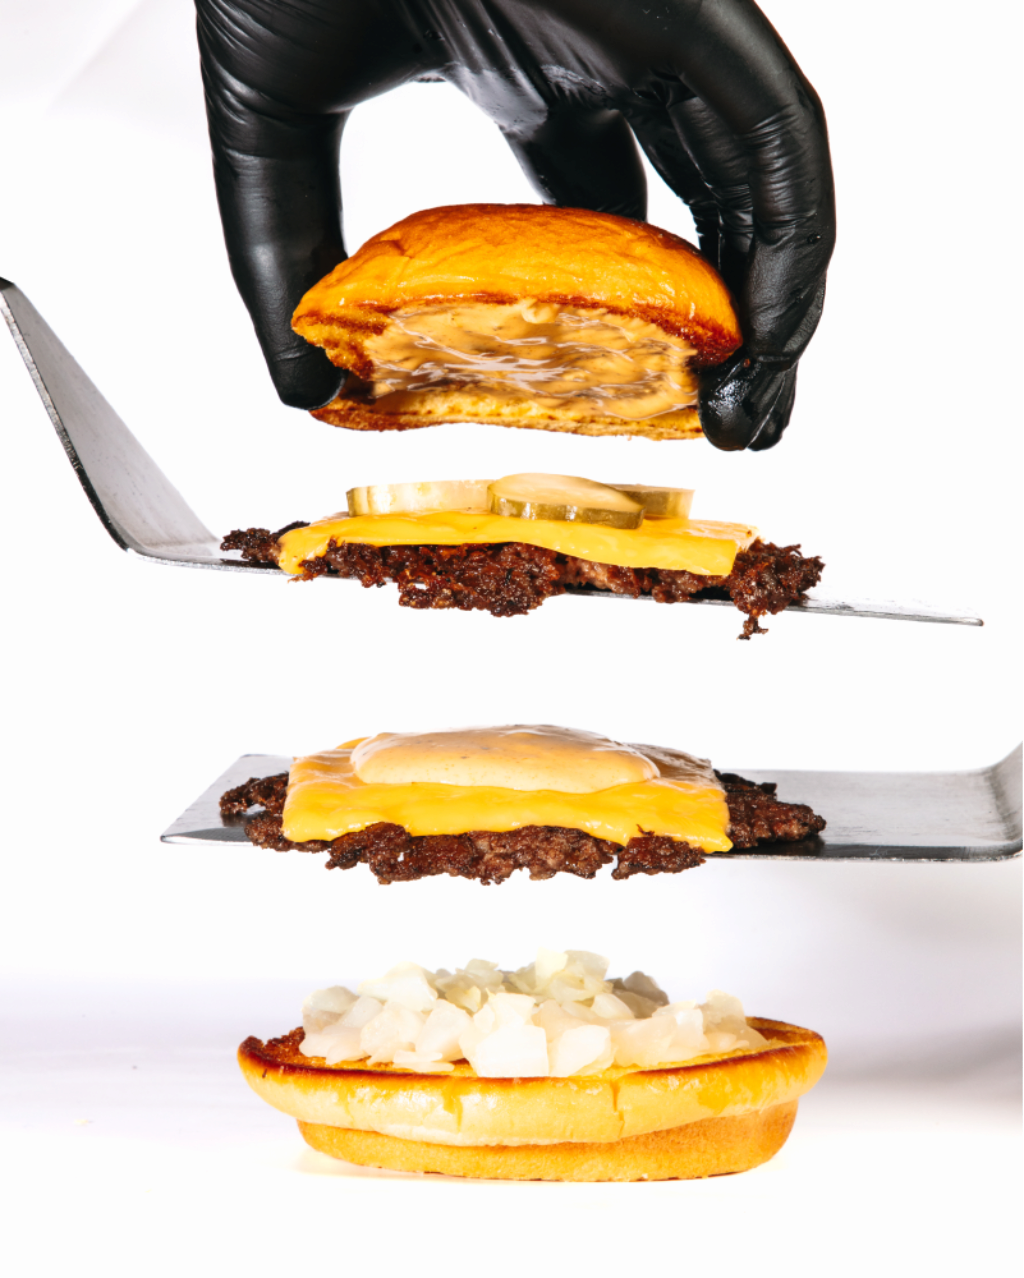 Assembling a burger